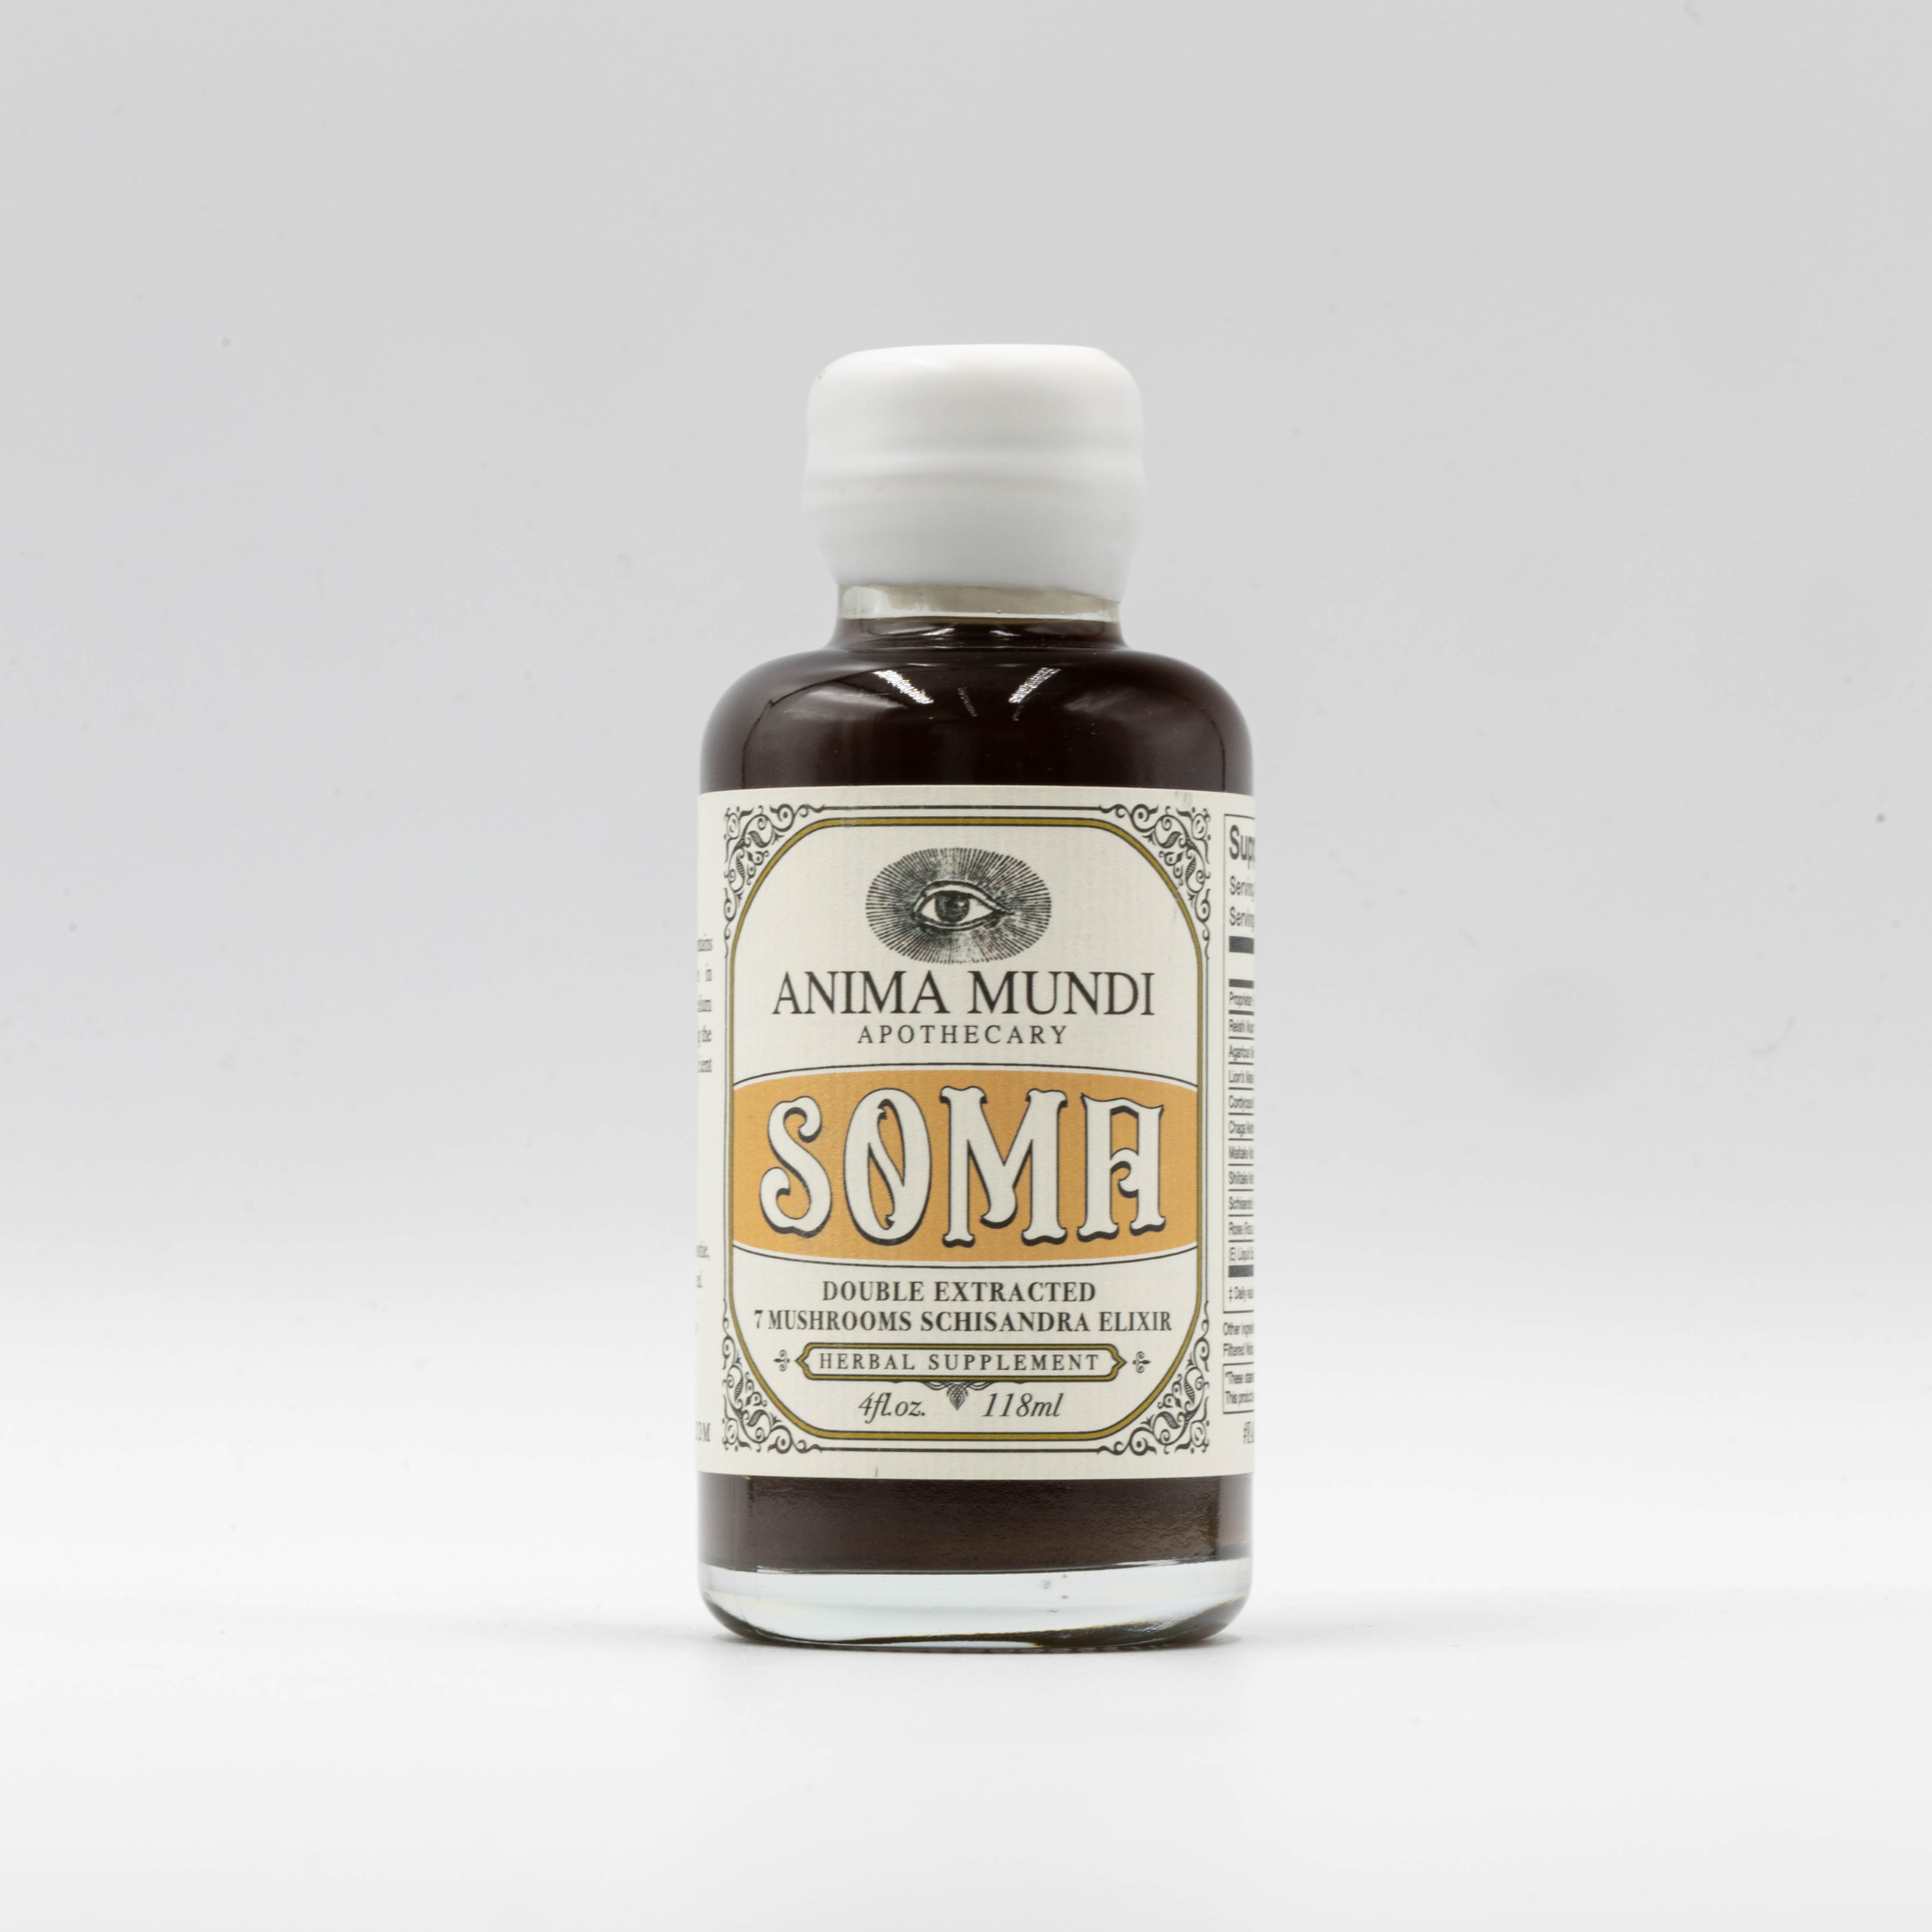 SOMA Elixir | 7 Mushrooms + Schisandra